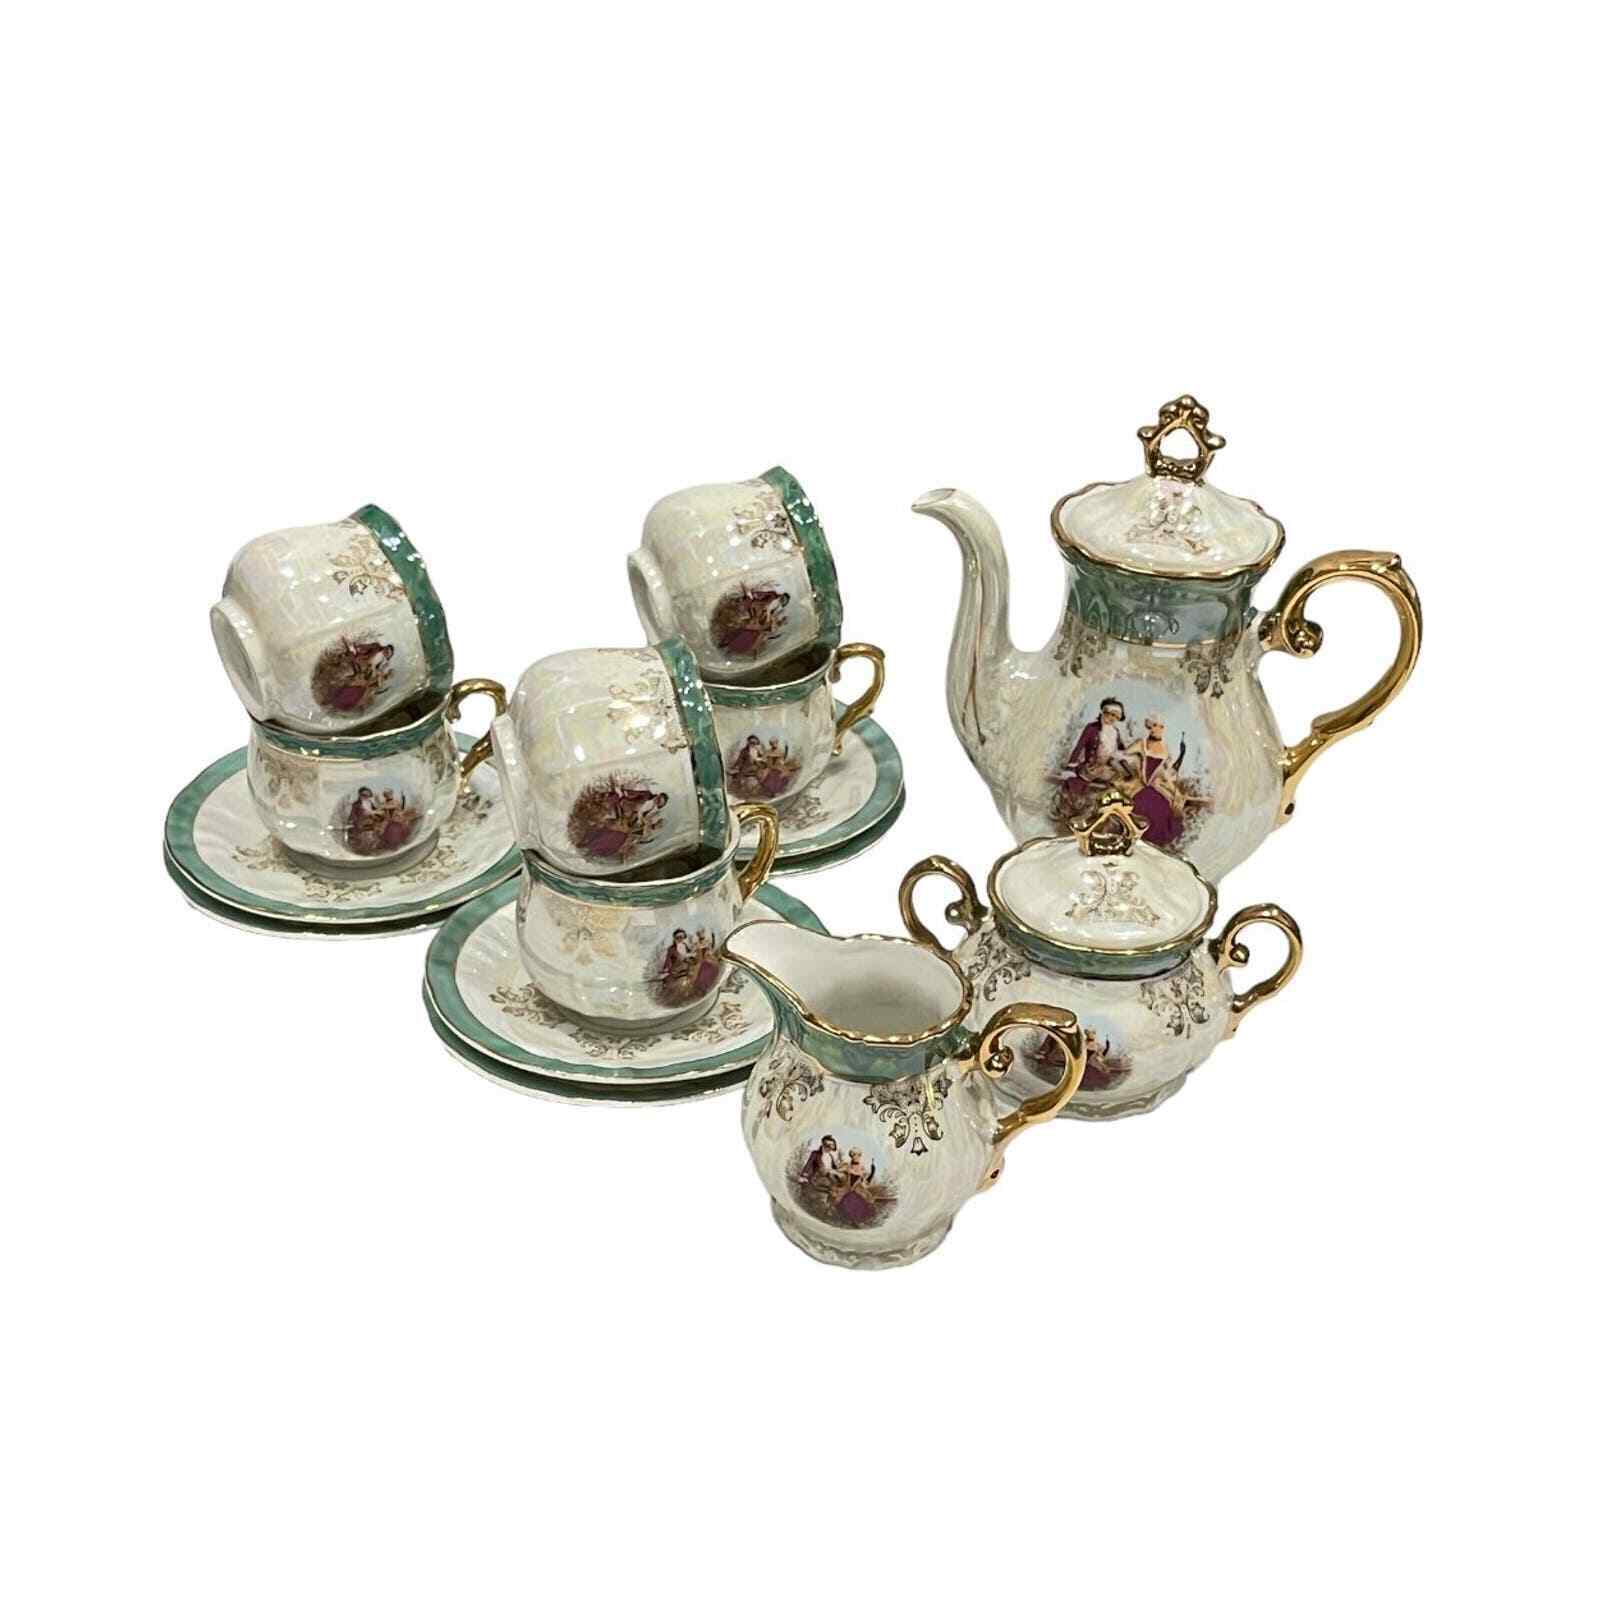 Vintage Elegant Royal Madonna Teaset Tea Set Coffee Set